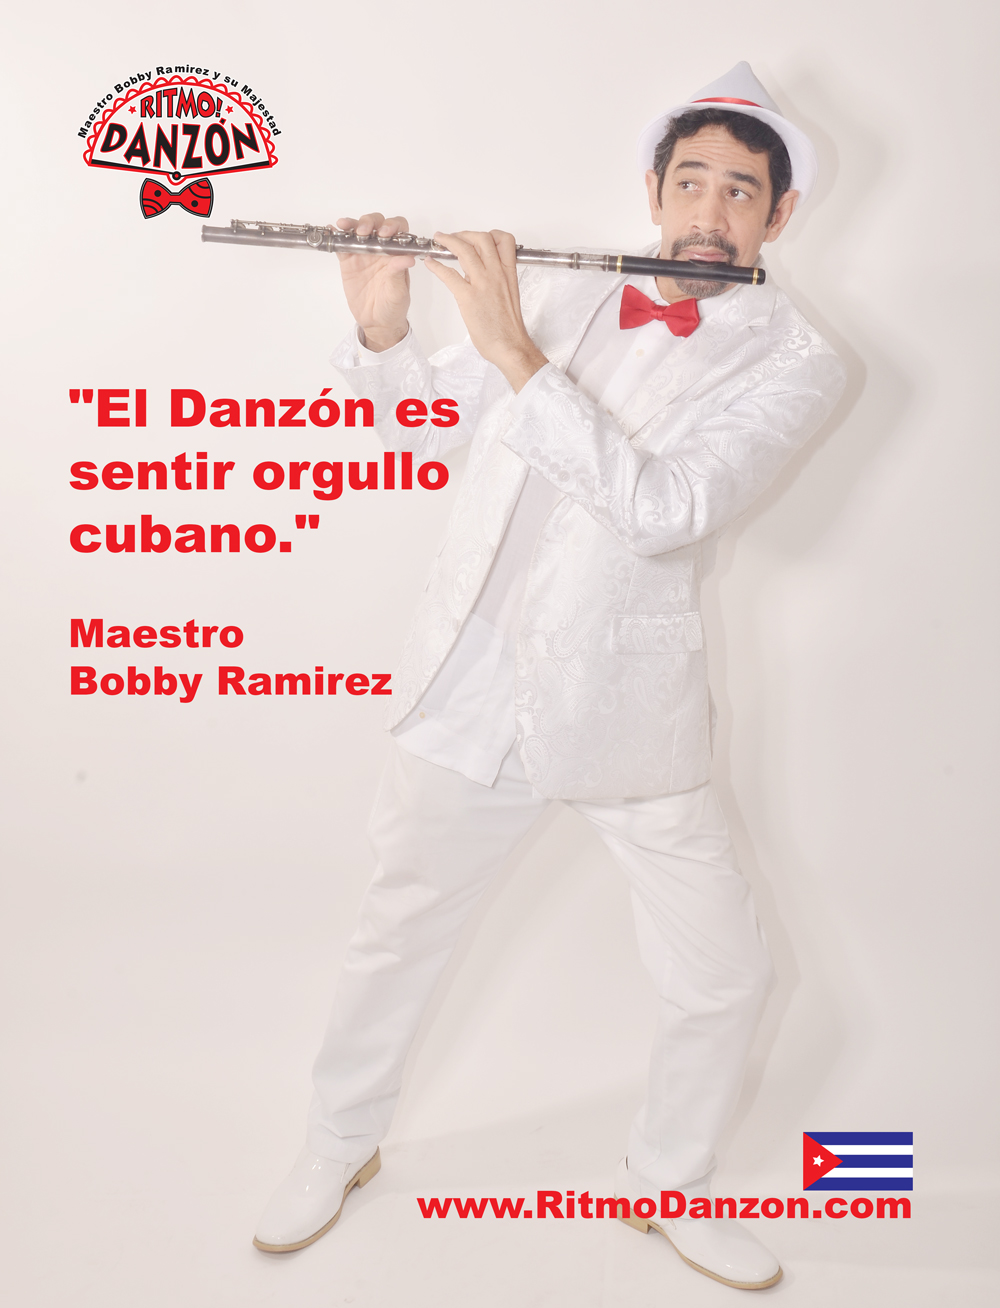 "El Danzon es sentir orgullo Cubano." Maestro Bobby Ramirez